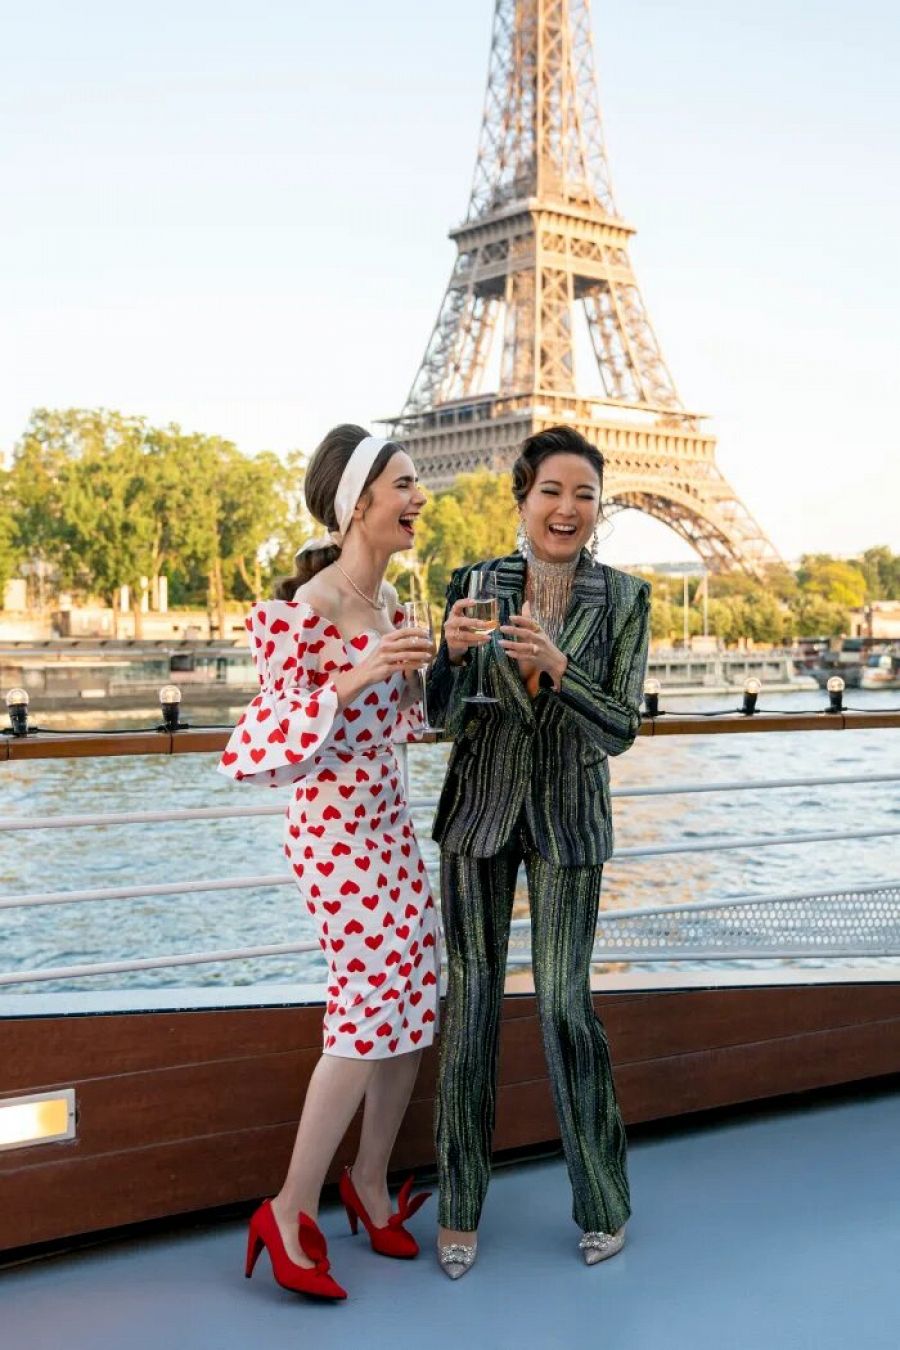 Cuánto cuesta el armario de 'Emily in Paris'?